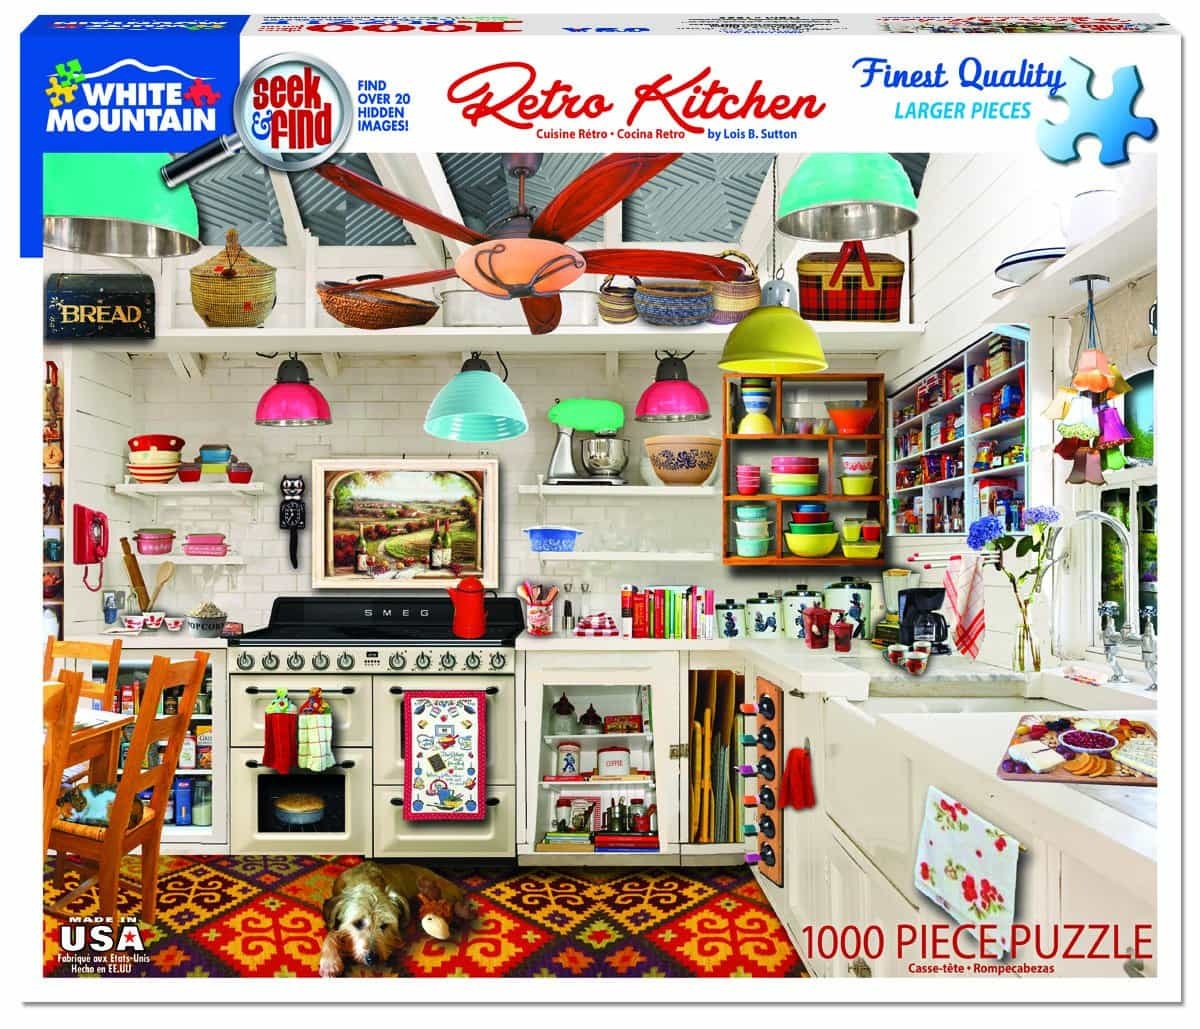 Retro Kitchen Seek & Find (1359pz) - 1000 Piece Jigsaw Puzzle